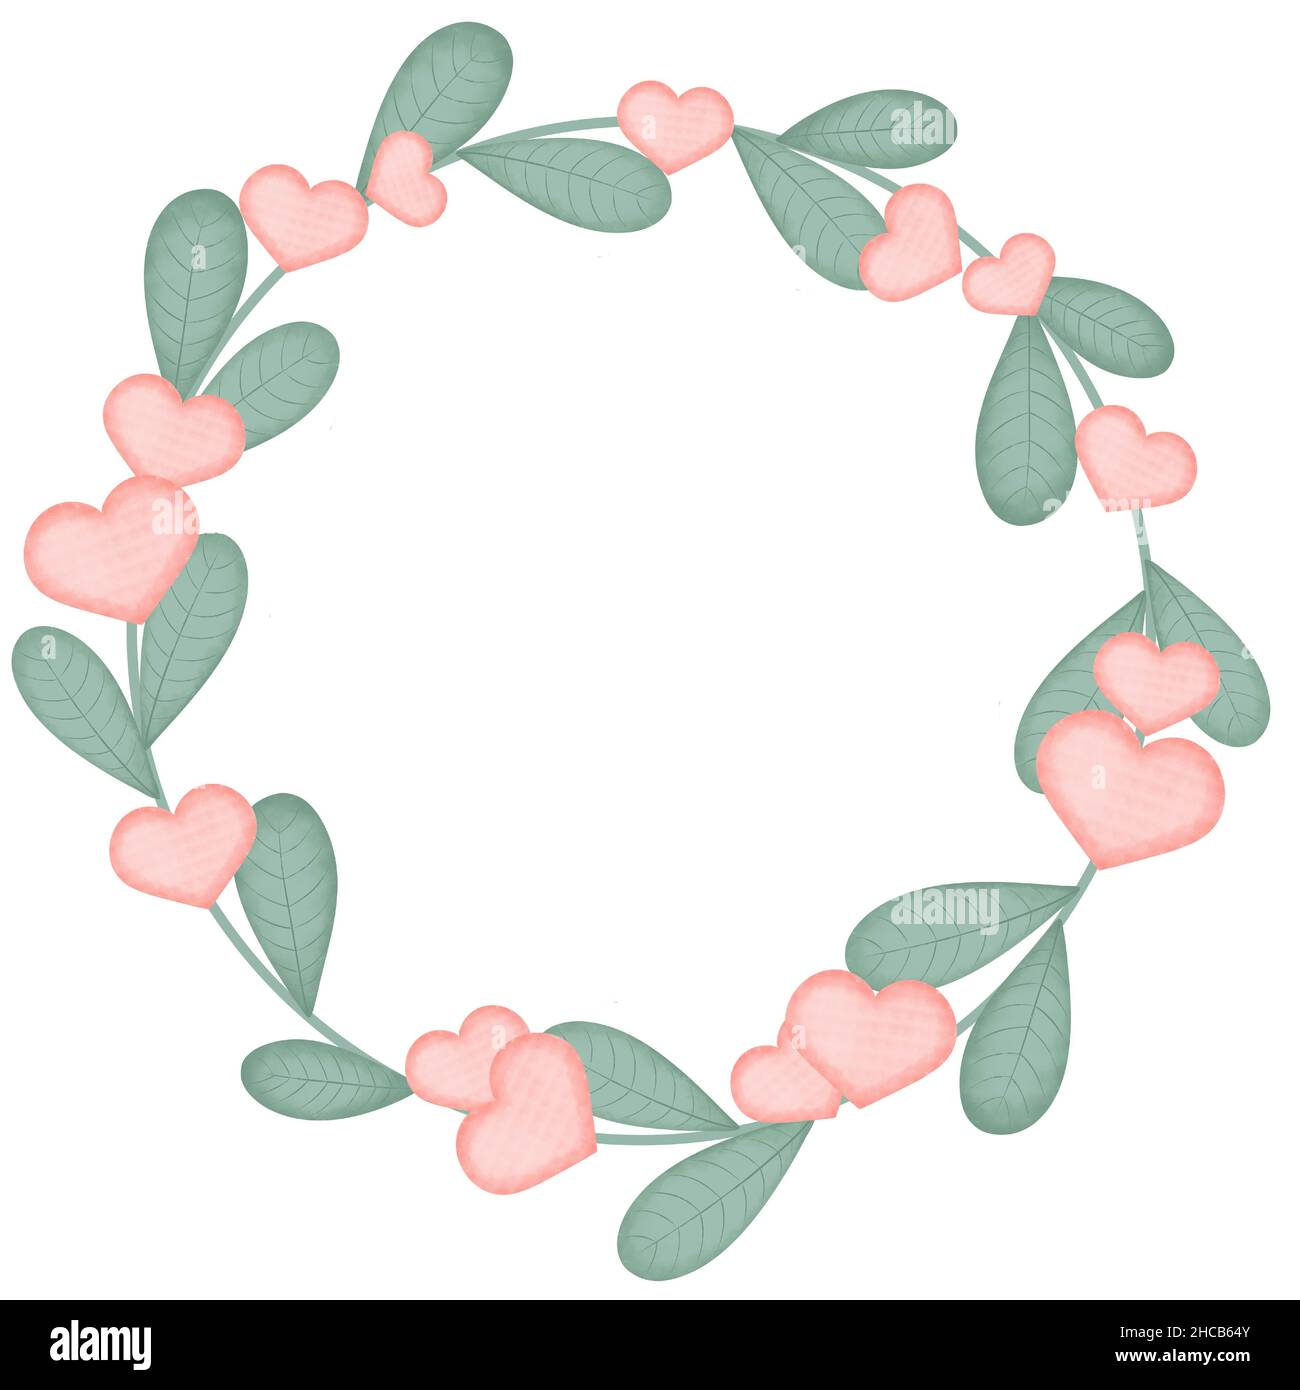 Grüne runde Lünette mit pinkfarbenen Herzen Stockfoto